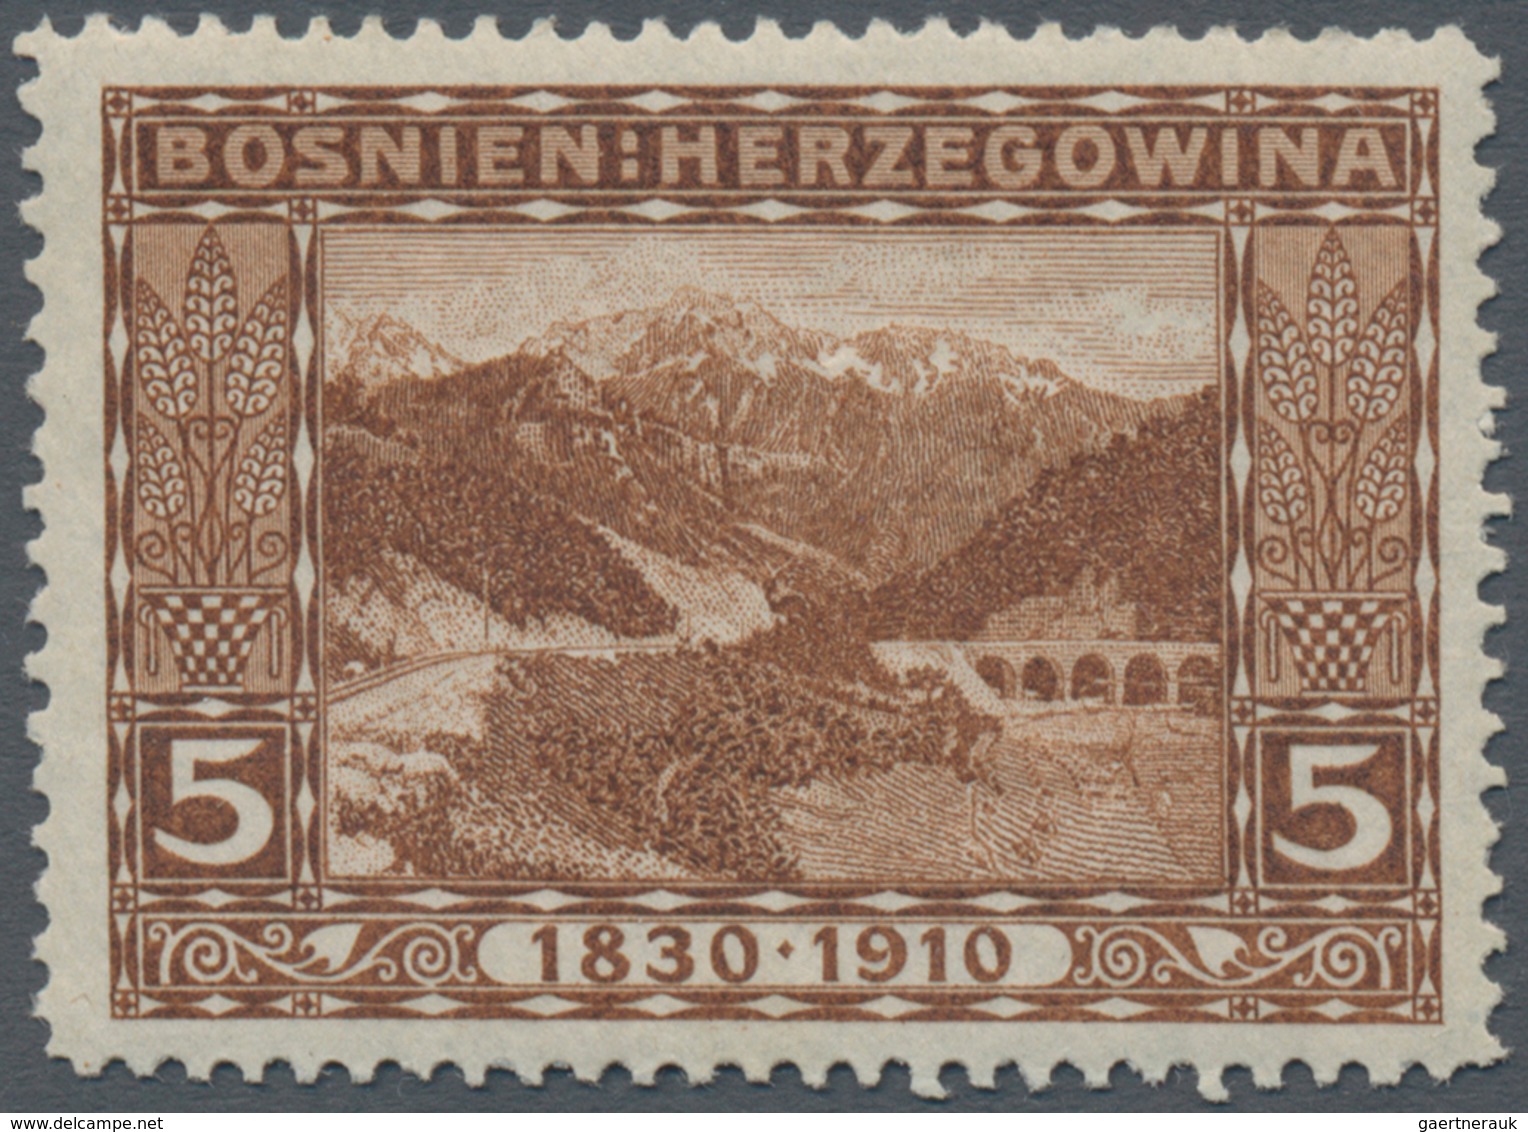 Bosnien und Herzegowina (Österreich 1879/1918): 1910, "80. Geburtstag Franz Joseph" alle 80(!) versc